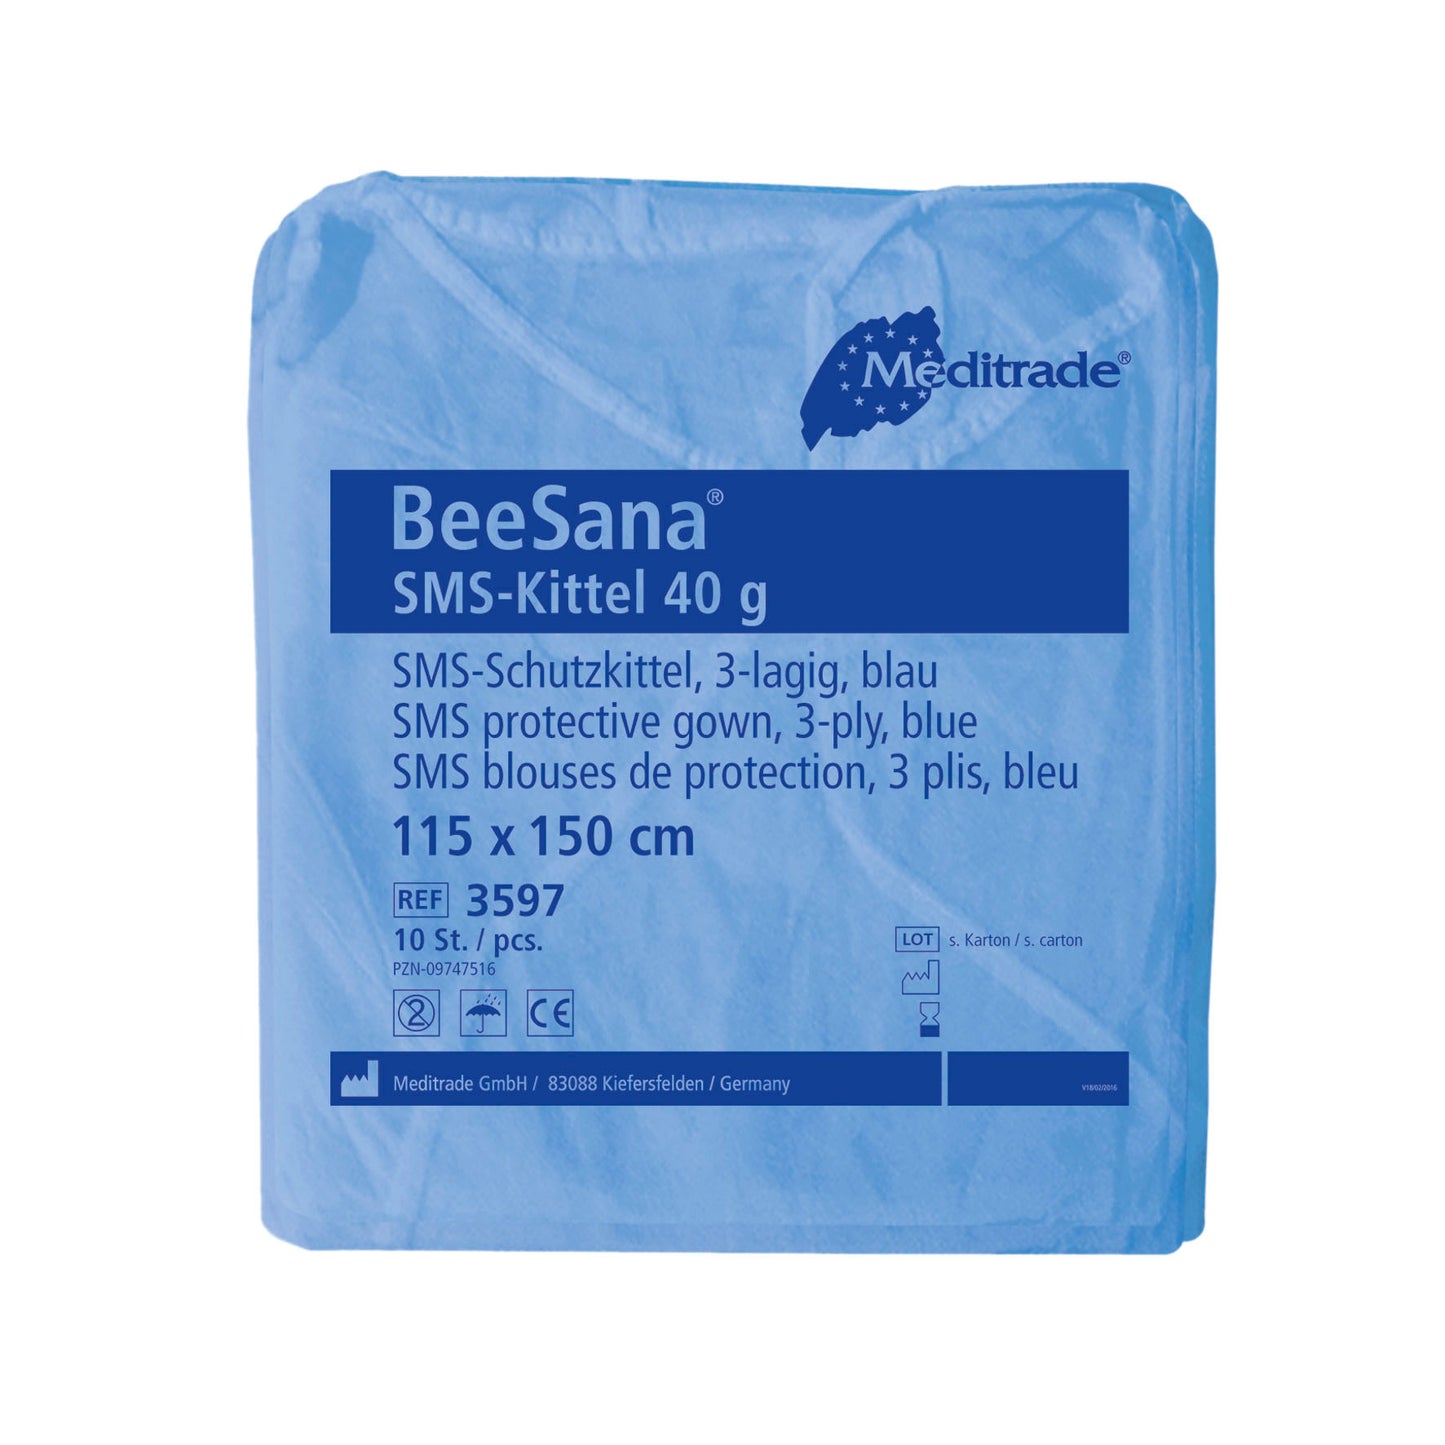 BEESANA® SMS-KITTEL 40 G, blau